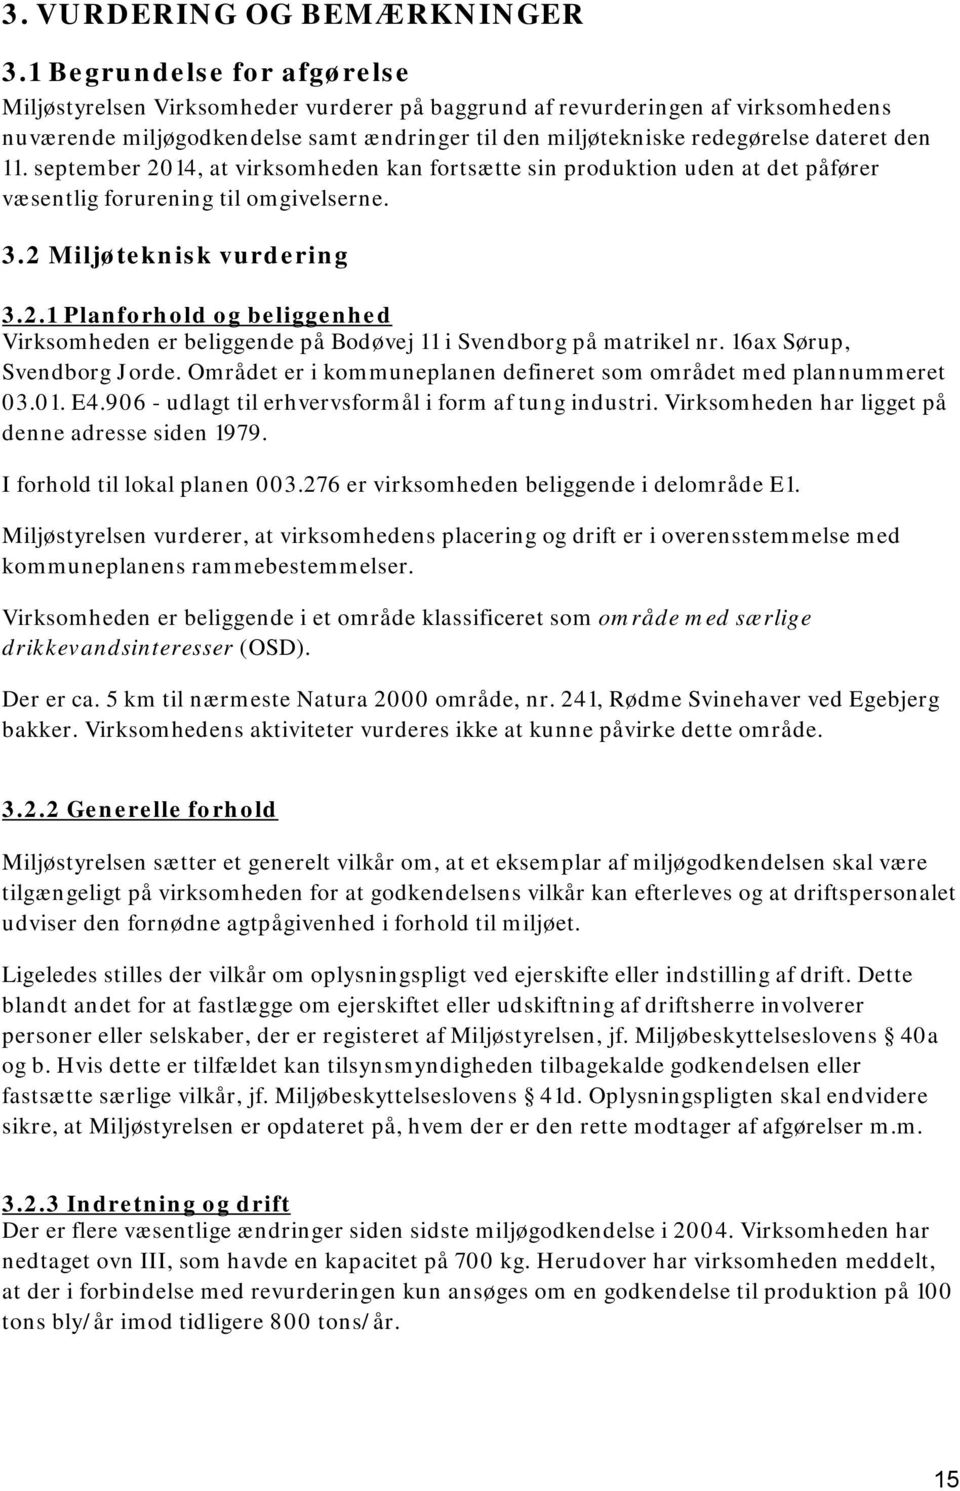 11. september 2014, at virksomheden kan fortsætte sin produktion uden at det påfører væsentlig forurening til omgivelserne. 3.2 Miljøteknisk vurdering 3.2.1 Planforhold og beliggenhed Virksomheden er beliggende på Bodøvej 11 i Svendborg på matrikel nr.